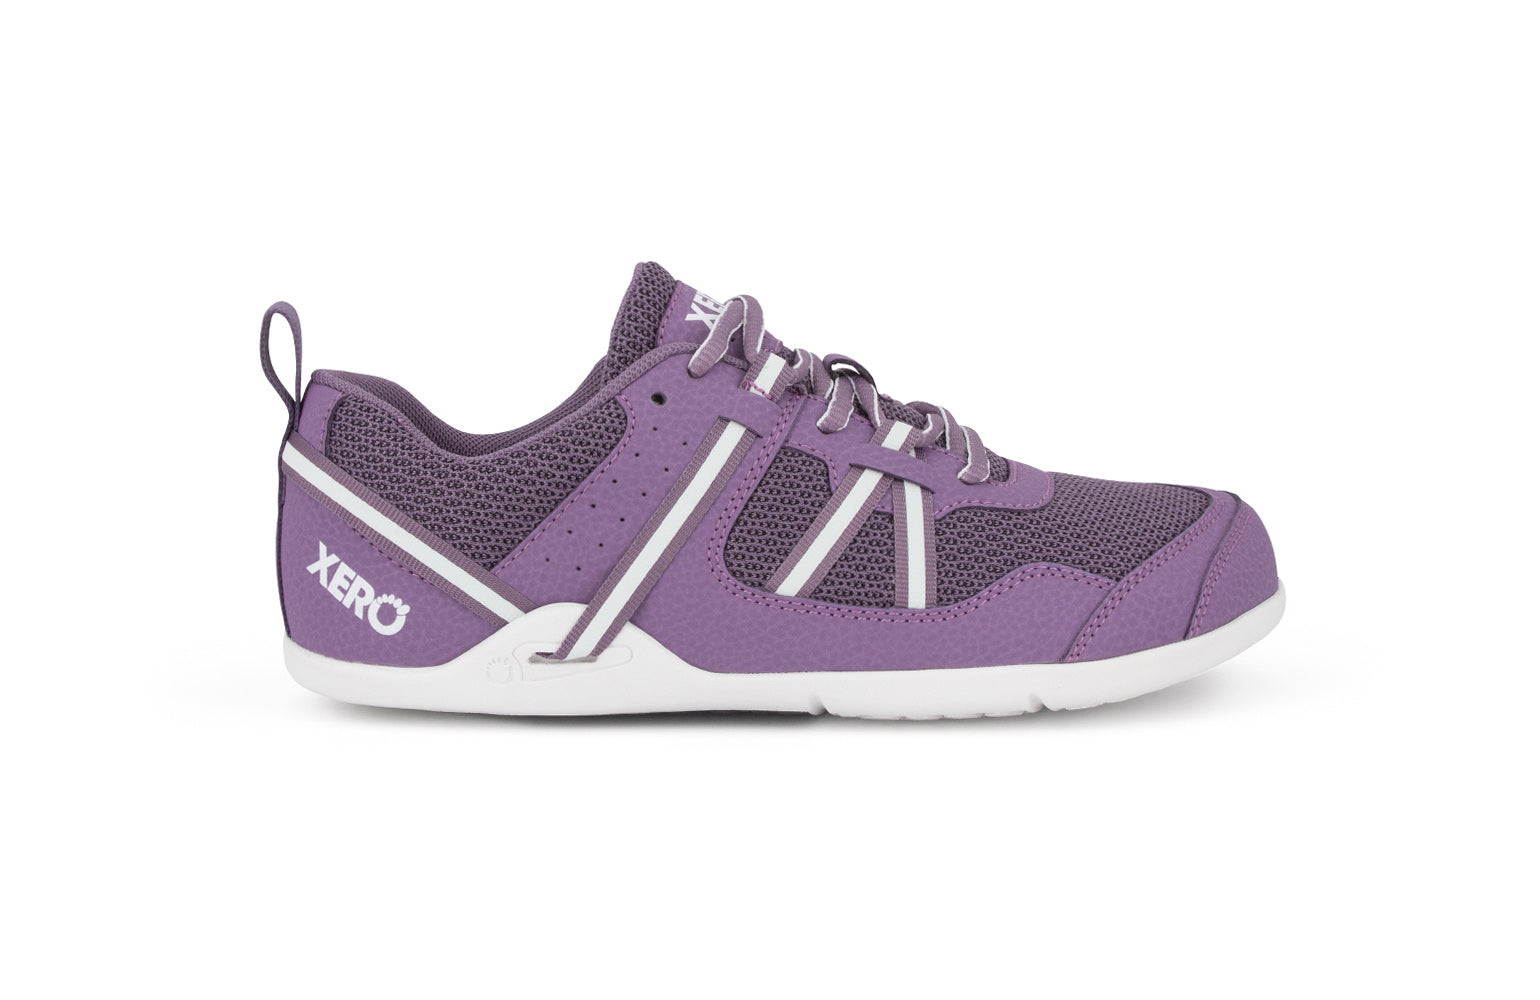 Xero Shoes Prio Kids barfods træningssko/sneakers til børn i farven violet, yderside